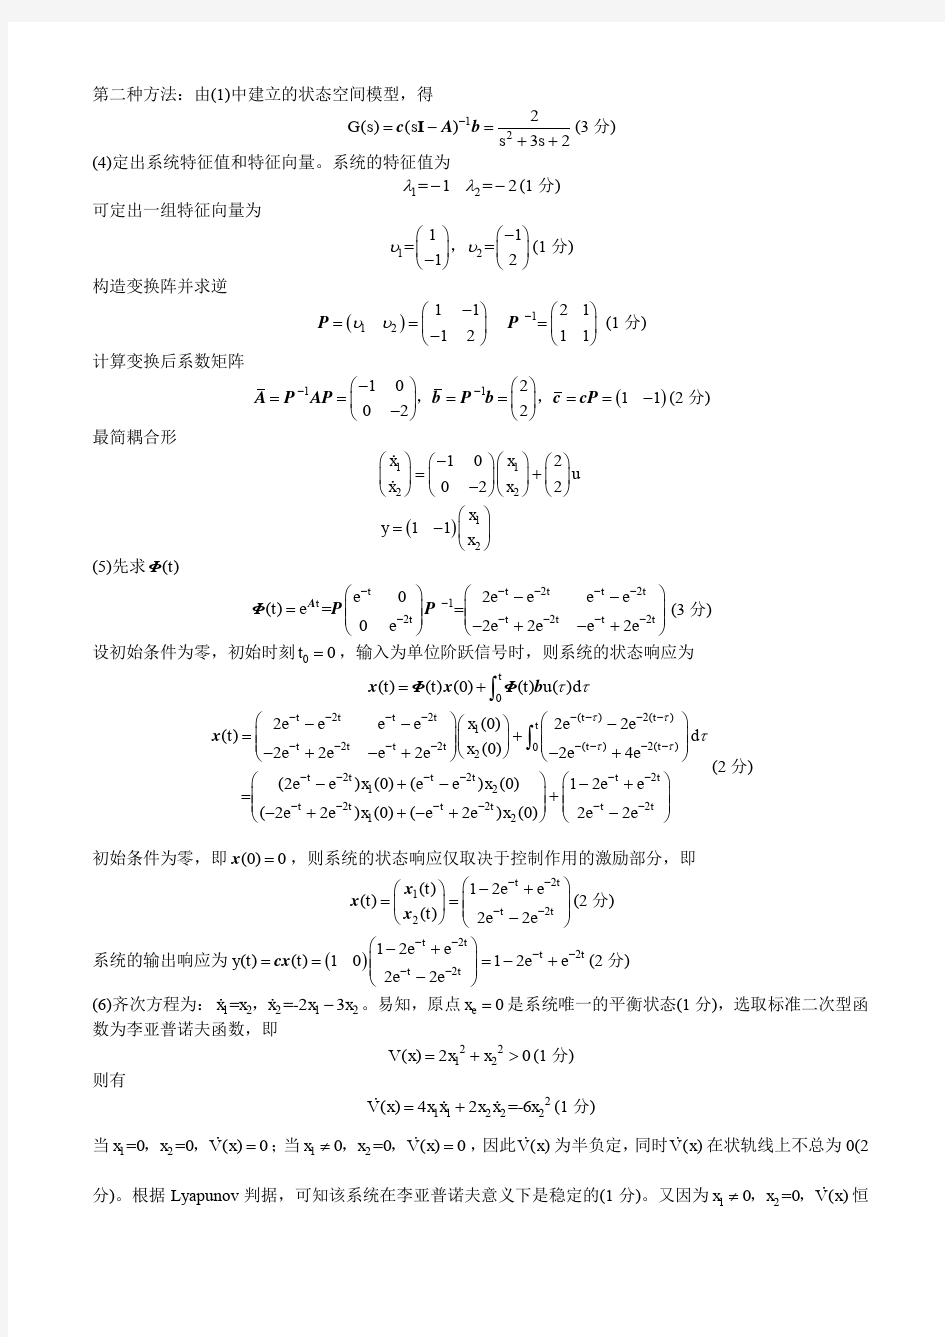 广西大学现代控制理论期末考试题库之计算题(含答案)